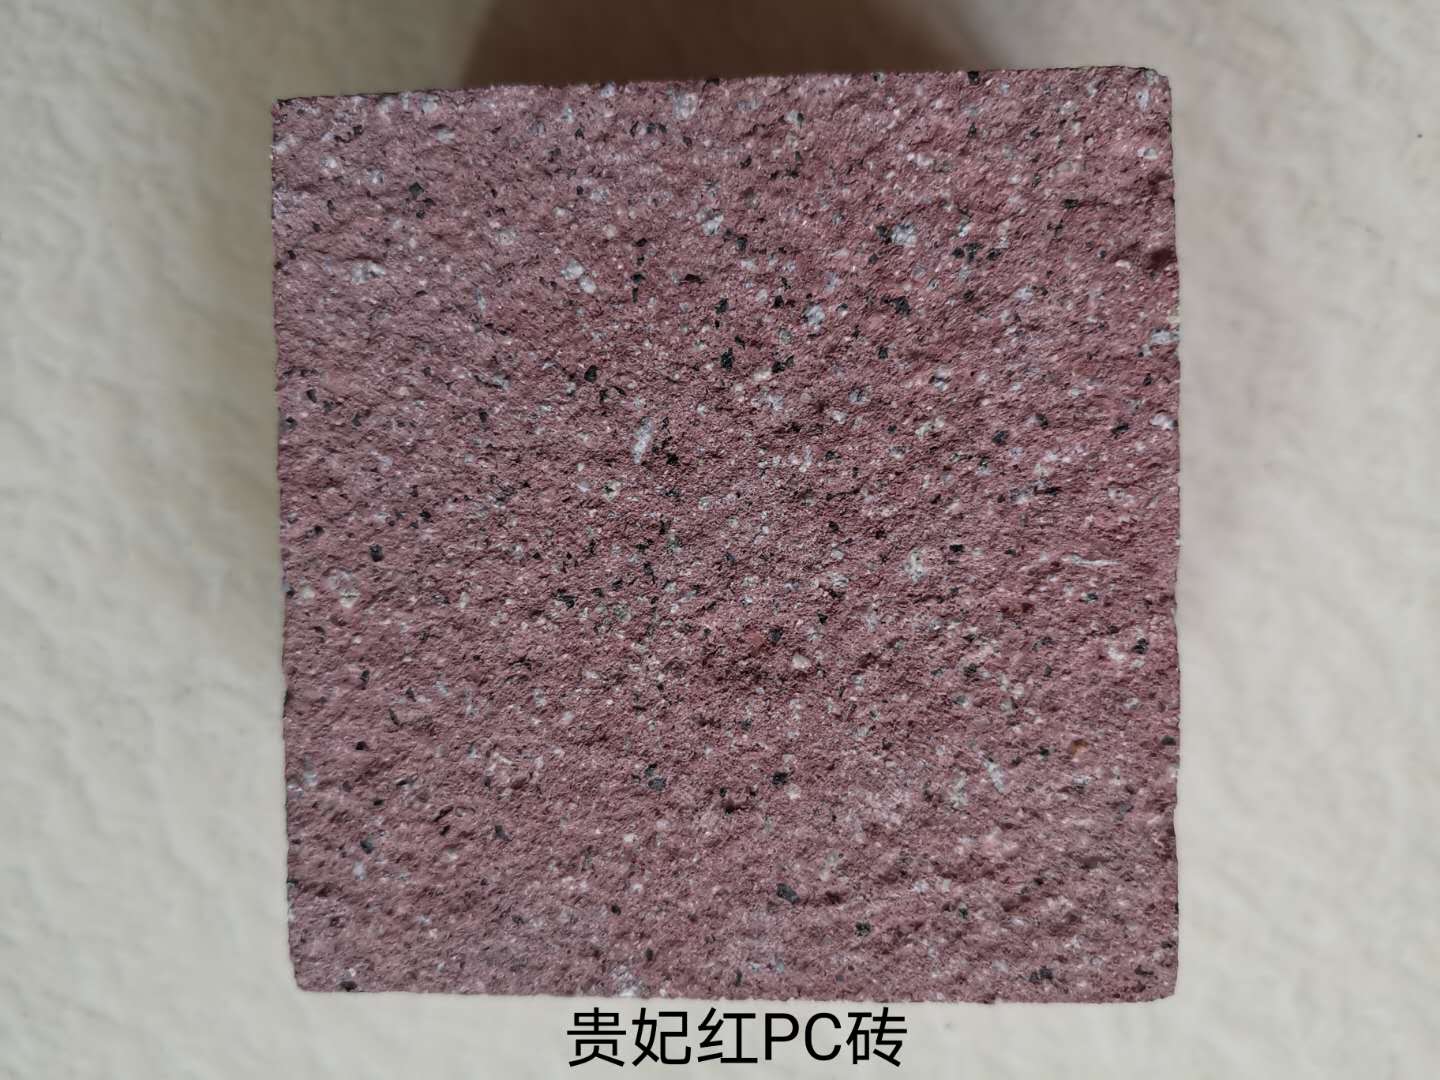 陶瓷颗粒透水砖哪家好,河南PC透水砖,郑州透水砖哪家好